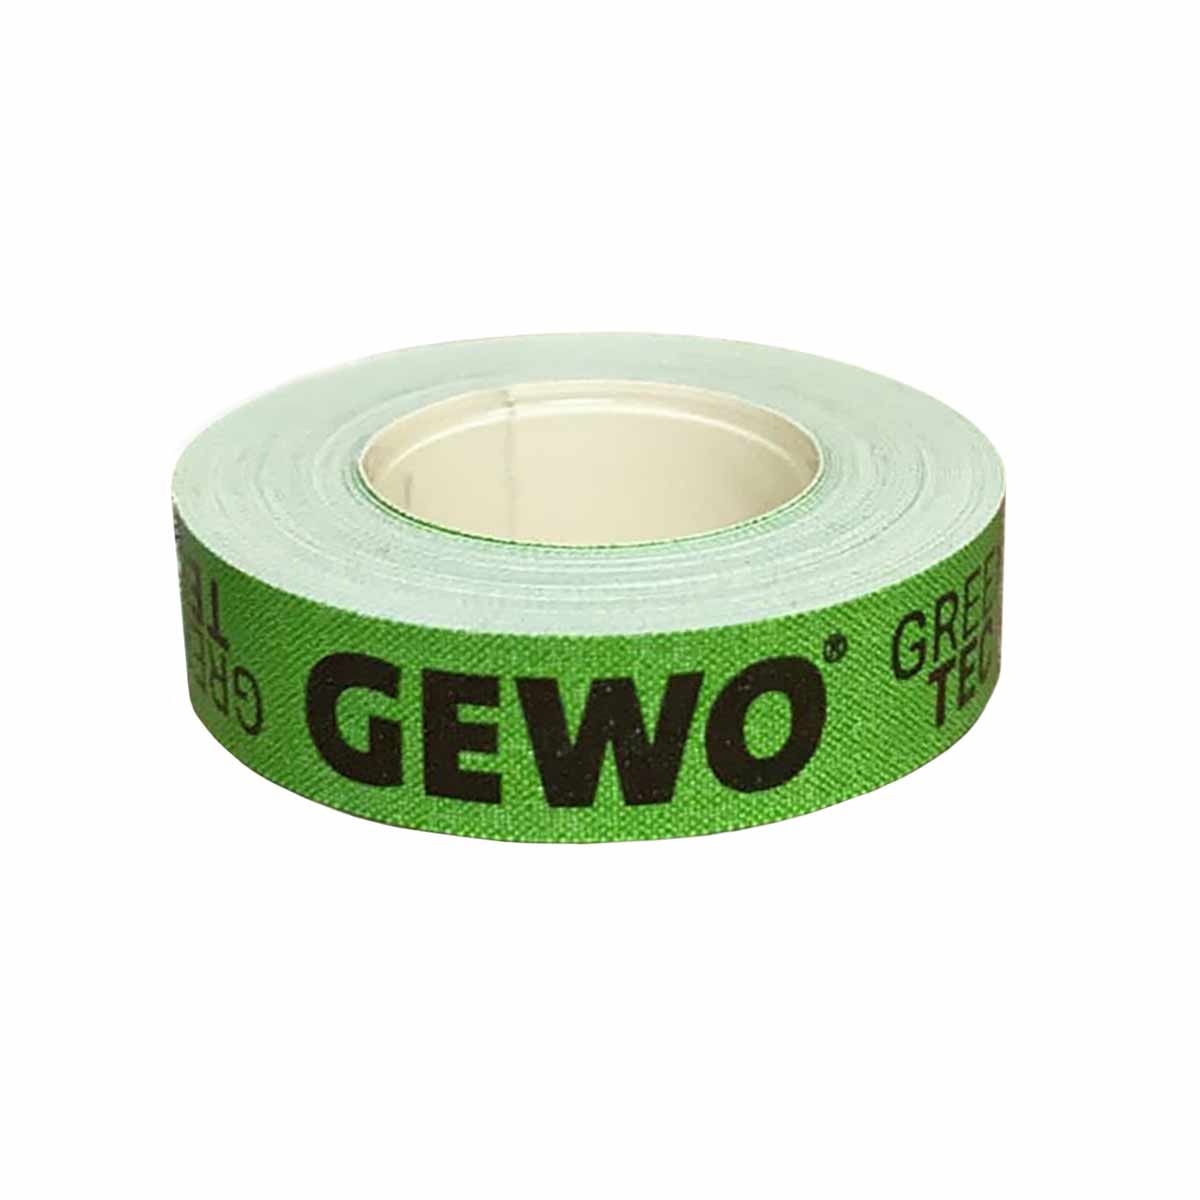 GEWO Kantenband Green-Tec12mm/5m grün/schwarz